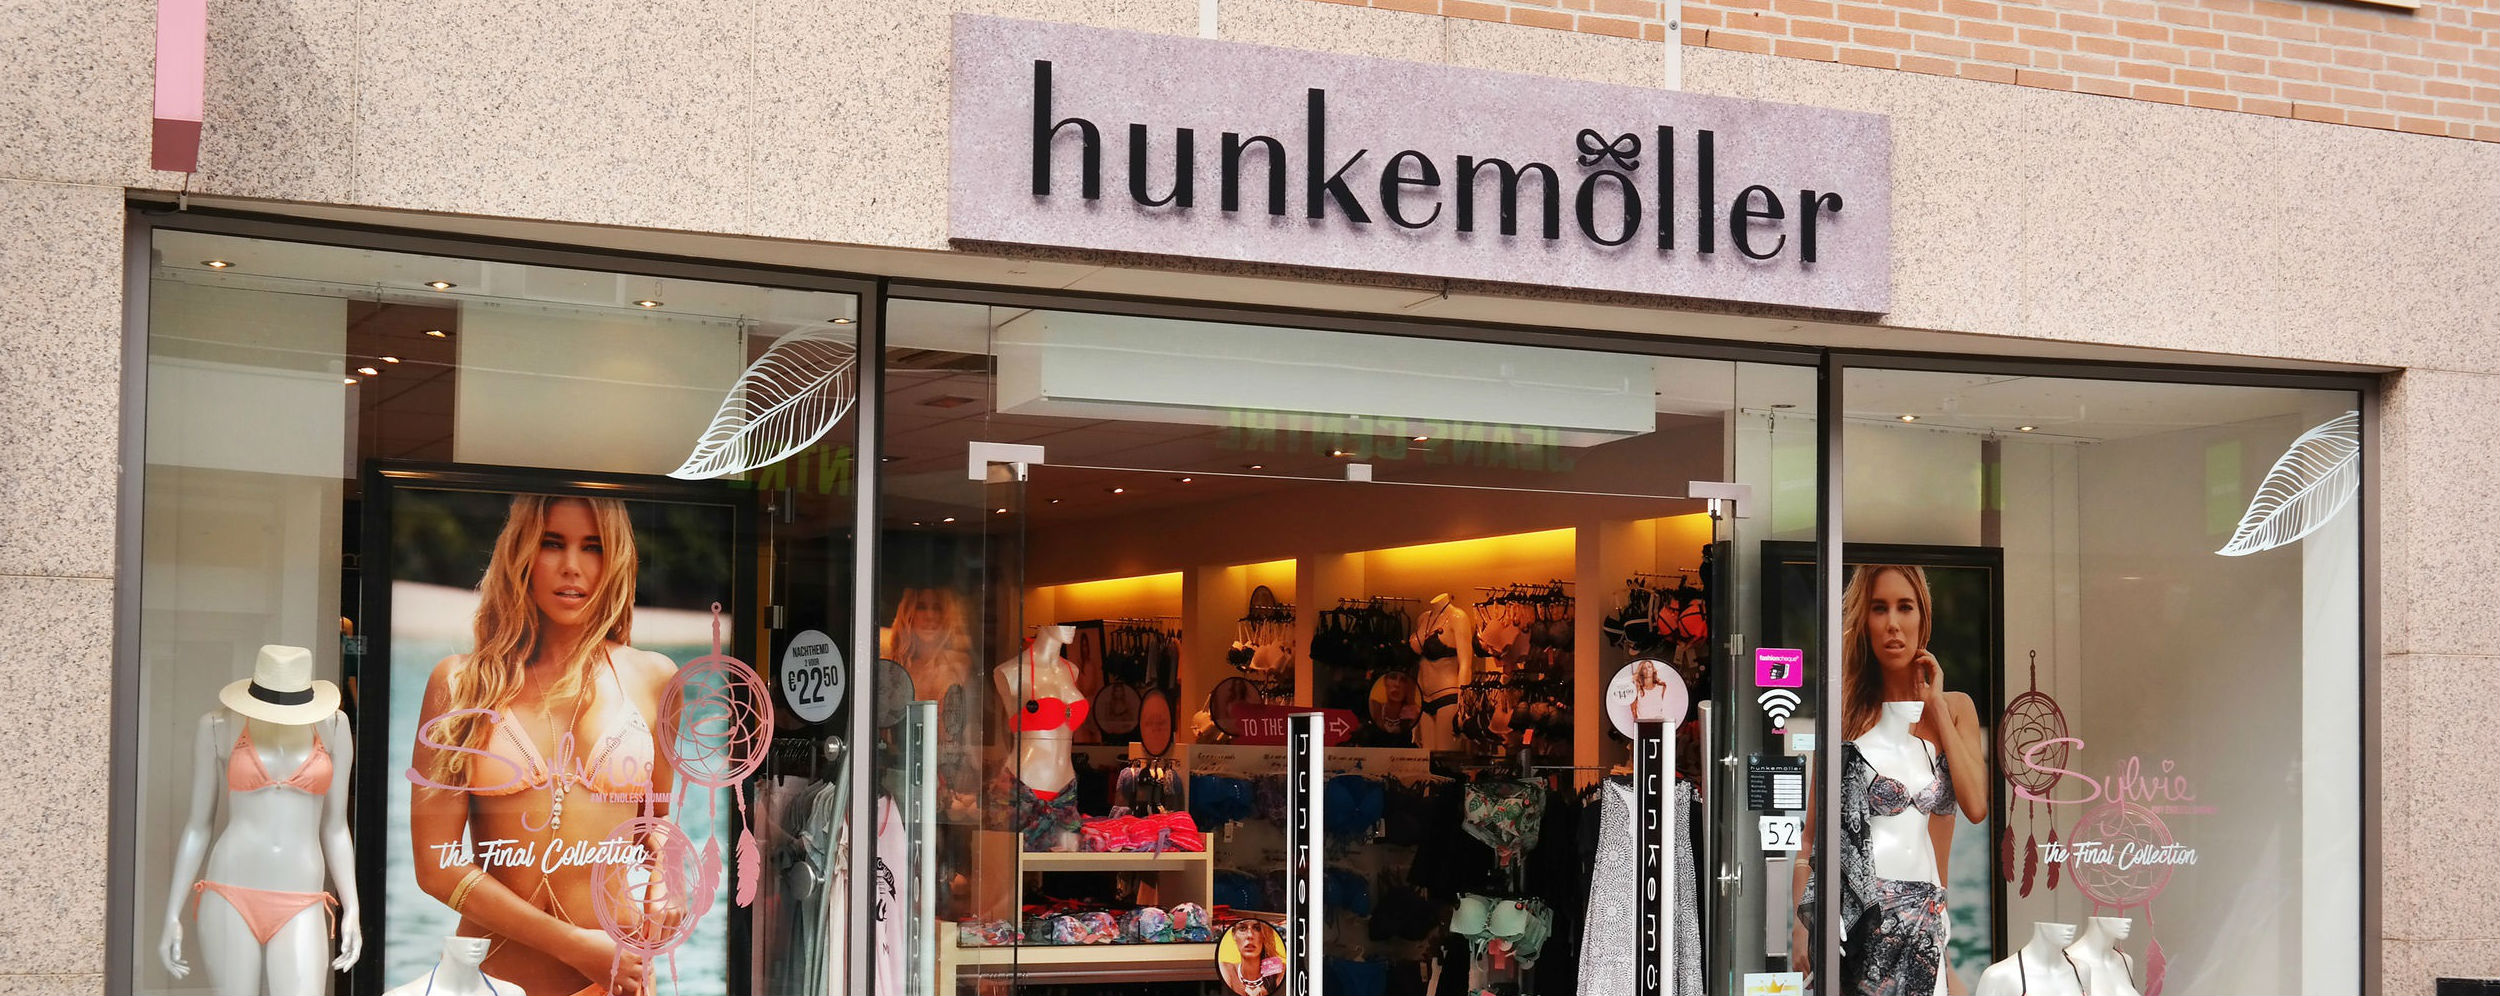 Middelen Suri vloeistof Omnichannel en marketing mooi huwelijk bij Hunkemöller | MarketingTribune  Online Marketing